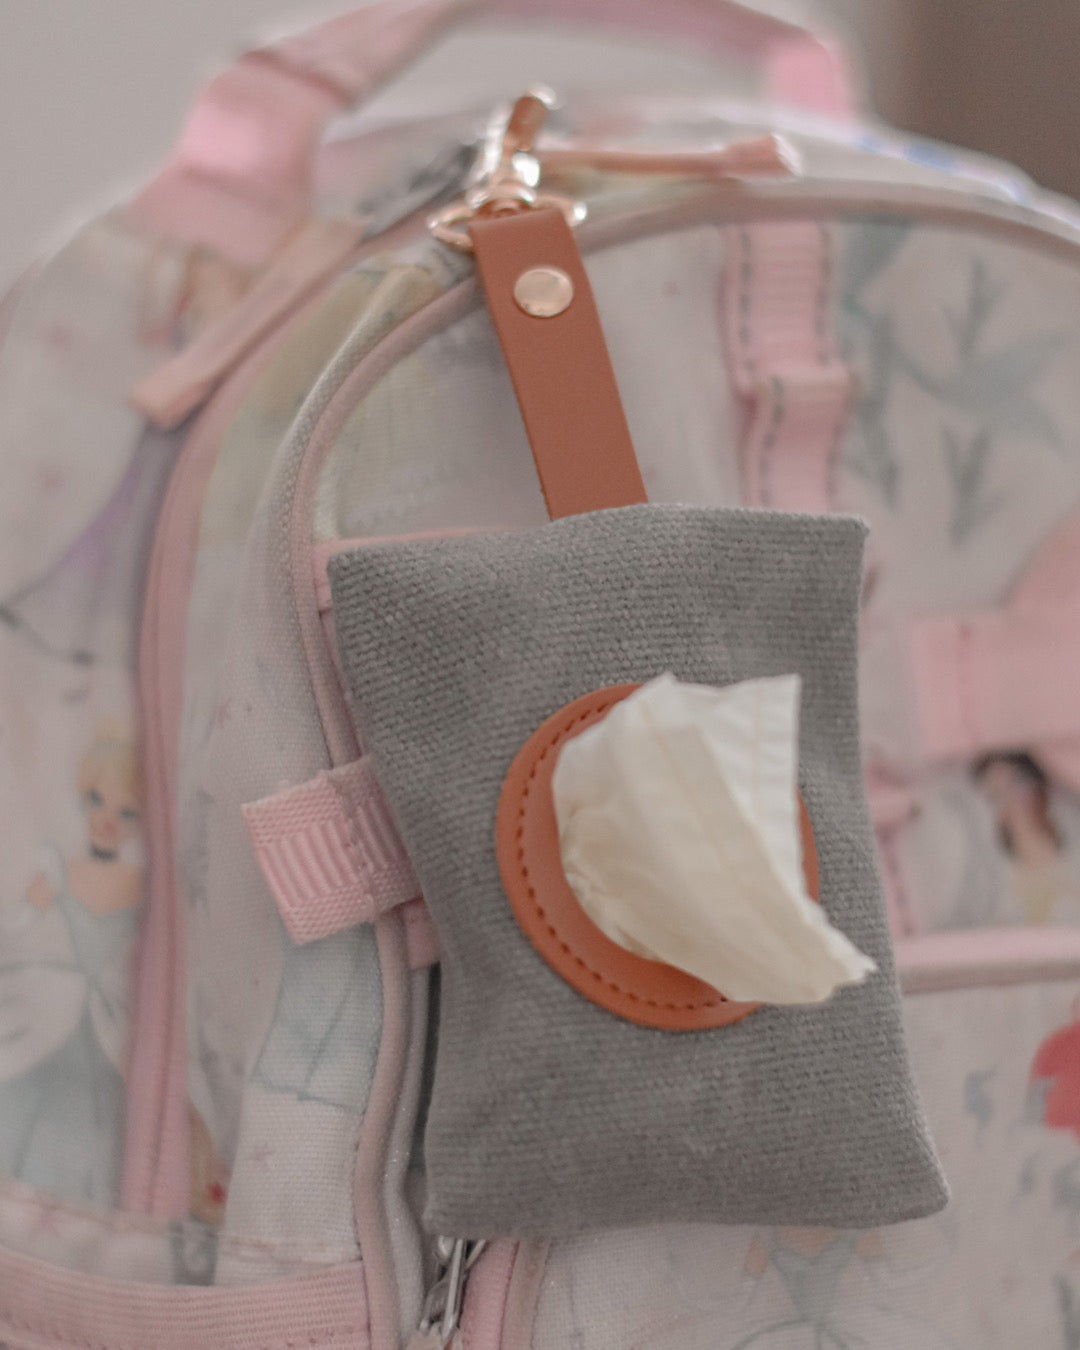 Baby Diaper Waste / Vomit Bag Dispenser